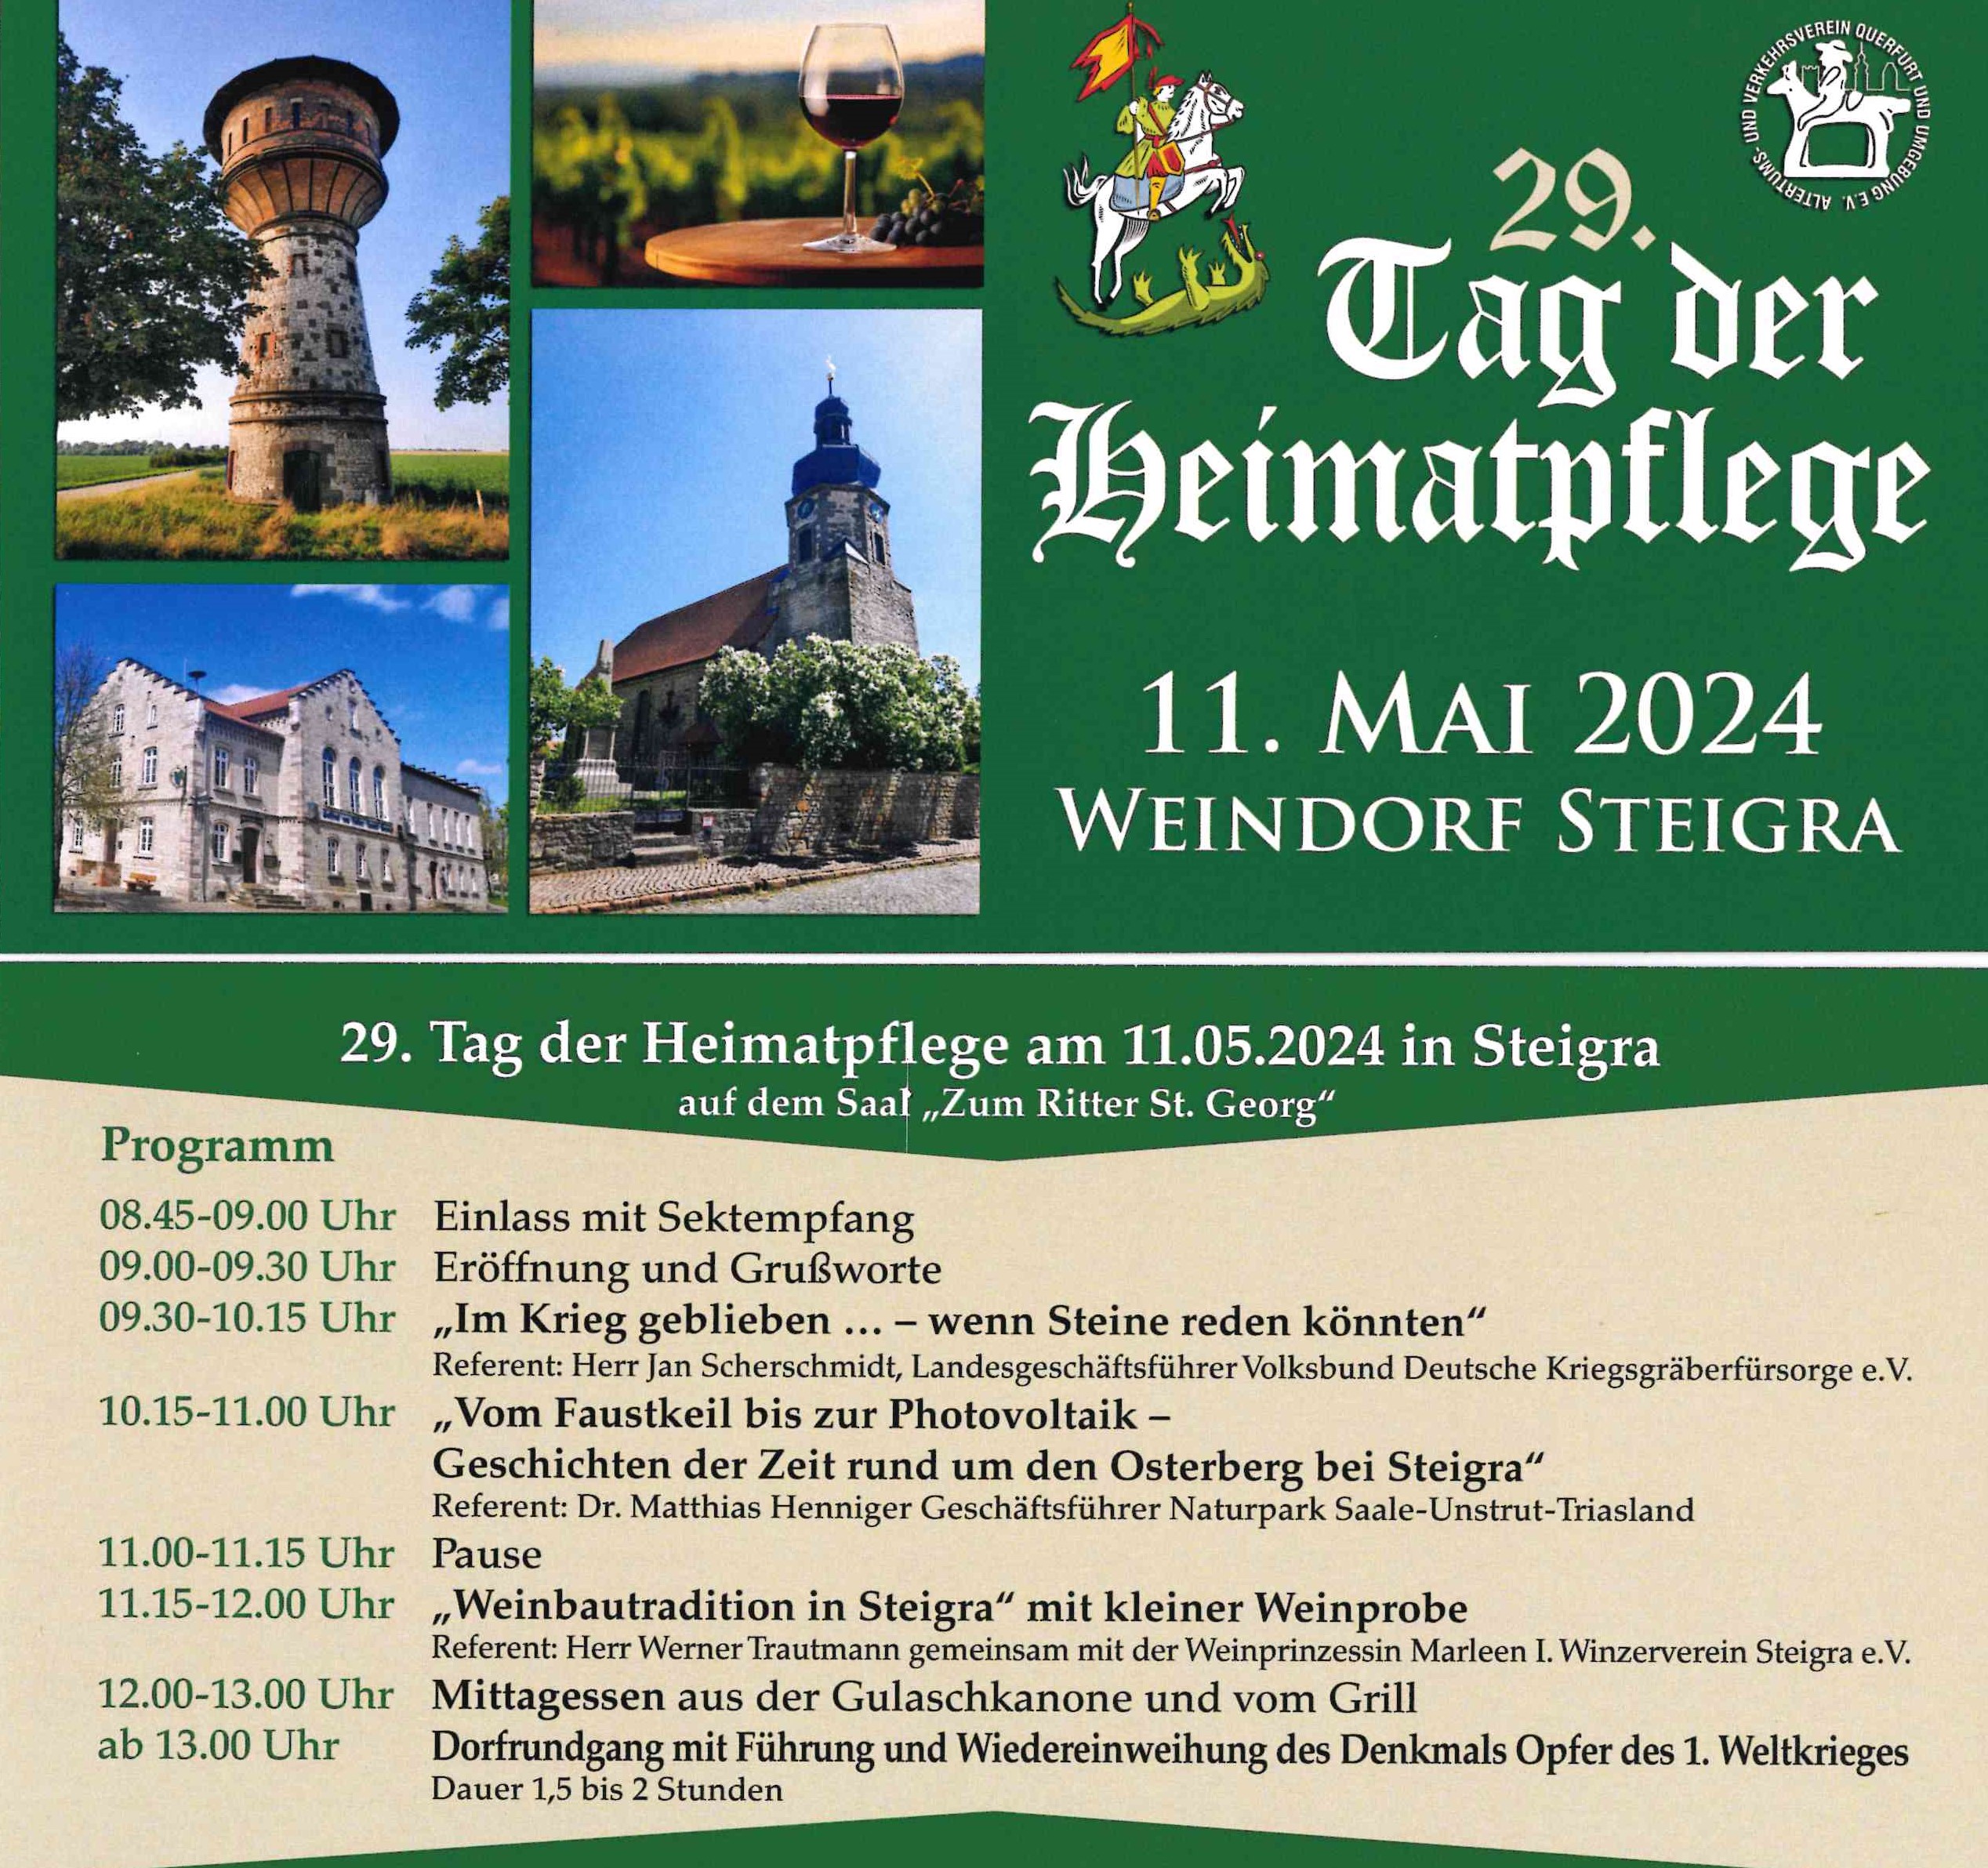 Tag der Heimatpflege 1n Steigra am 11.05.2024 mit dem Heimatverein Steigra e.V.